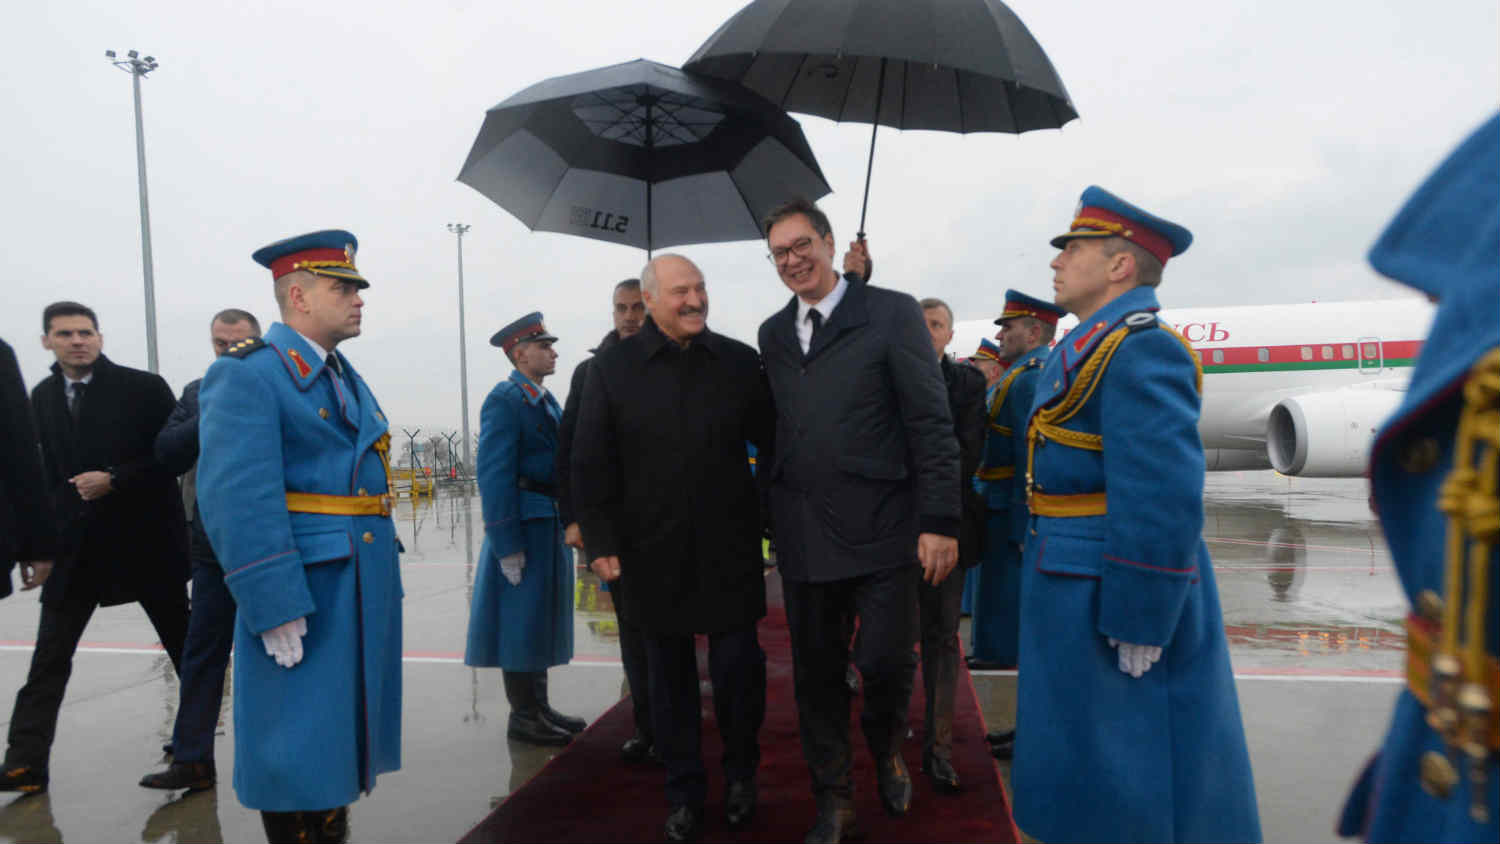 Neizvesno da li će srpske vlasti primeniti ceo paket sankcija protiv Lukašenka 1